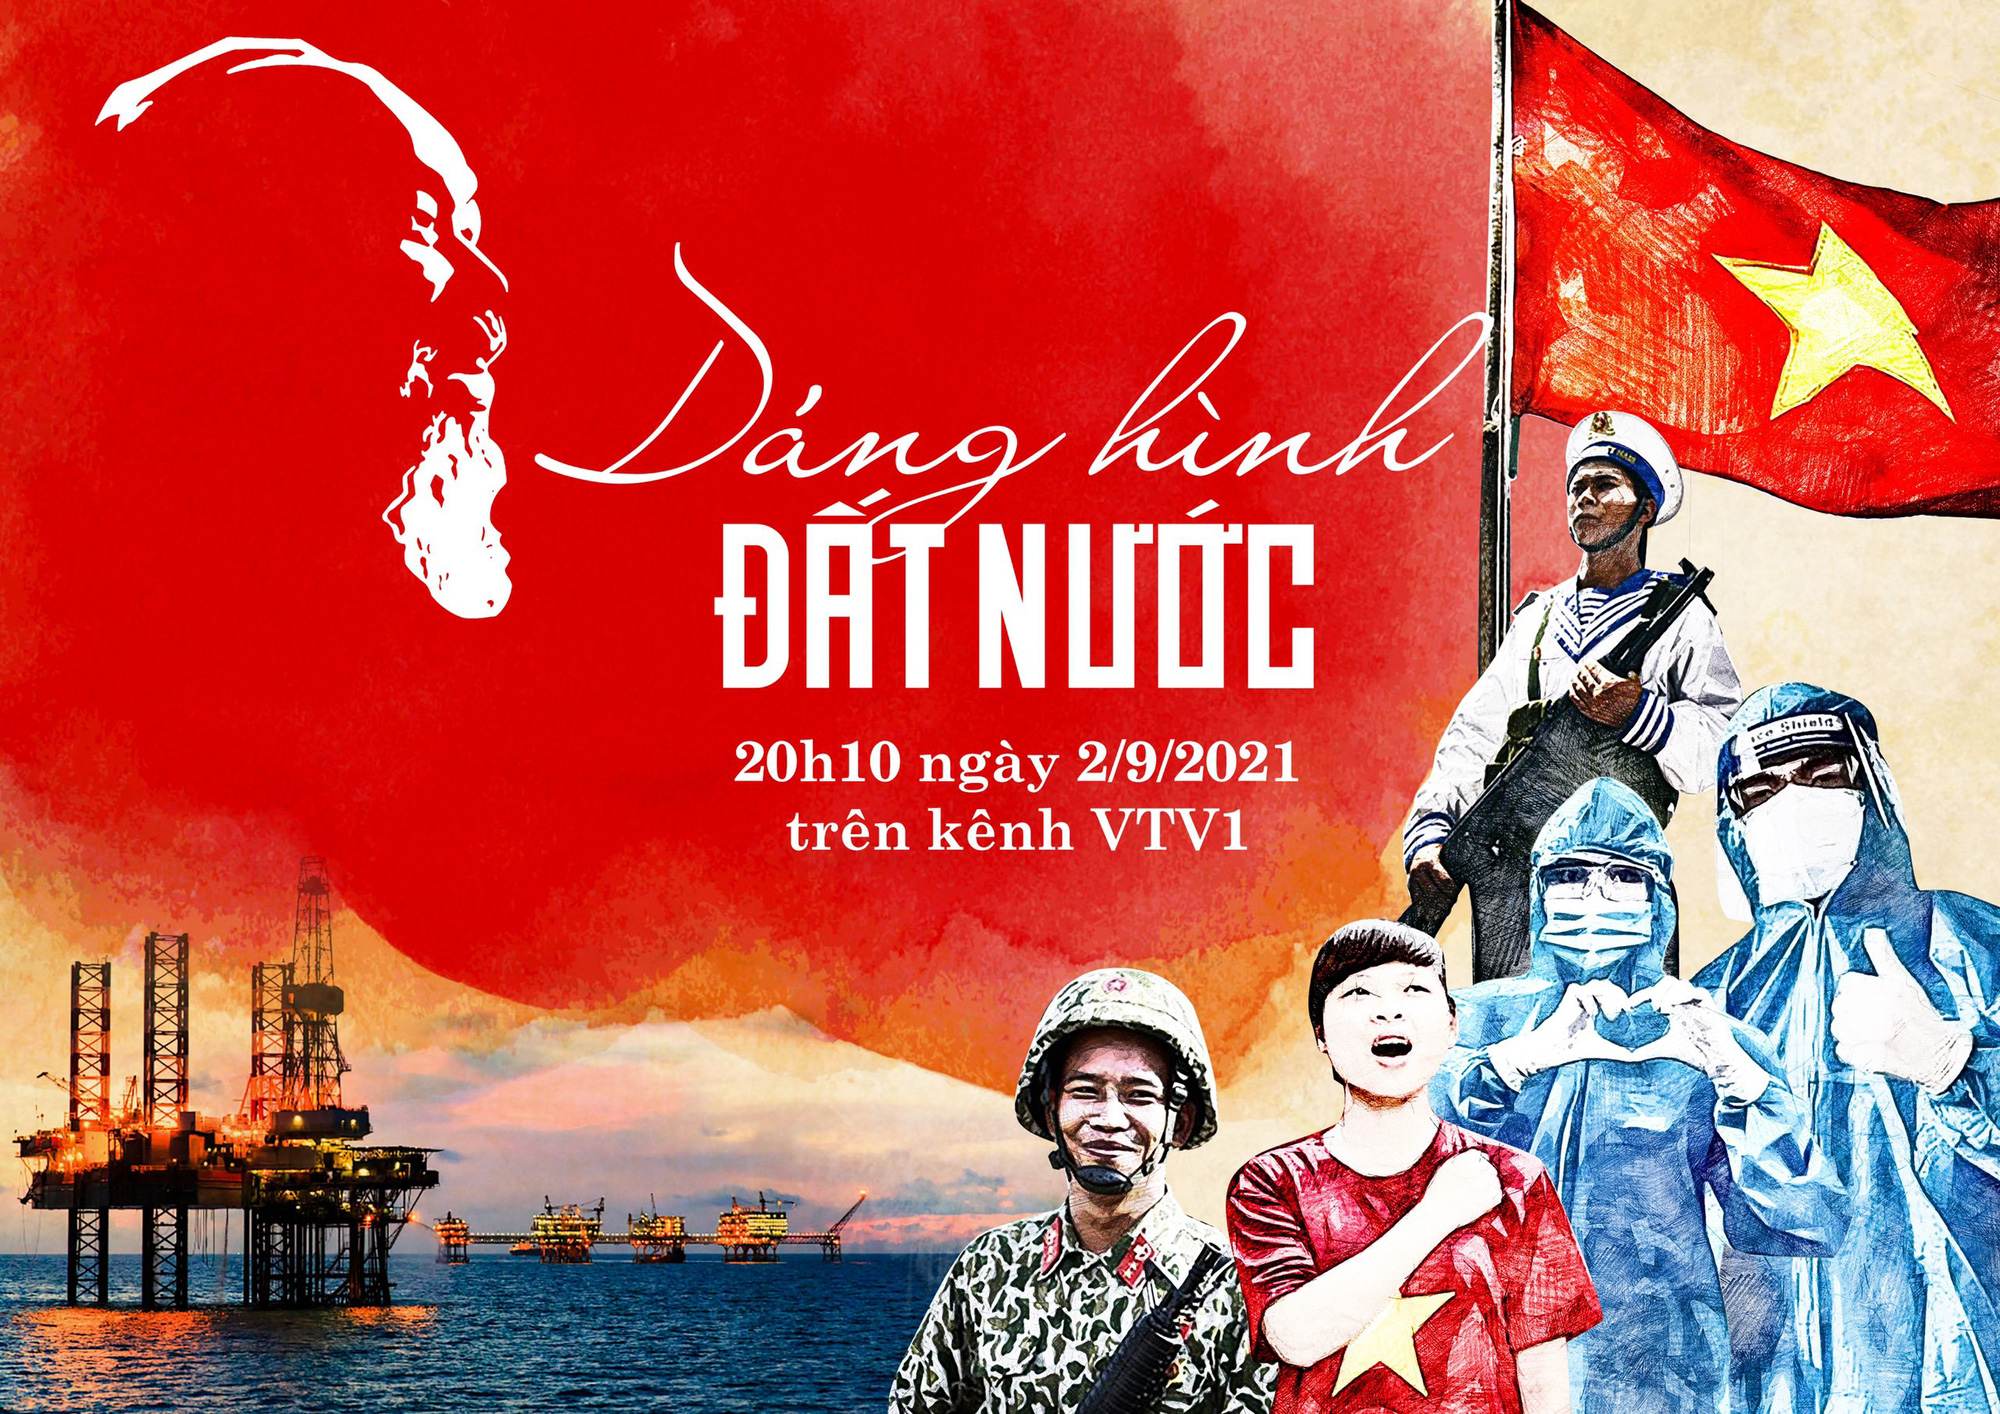 Dáng hình đất nước được thể hiện qua bức ảnh tuyệt đẹp, là món quà tuyệt vời dành tặng cho người yêu thích văn hóa độc đáo của dân tộc Việt Nam. Bức ảnh thể hiện nét đẹp hùng vĩ, thiên nhiên tuyệt vời và nét đặc trưng của văn hóa đồi núi của đất nước ta.